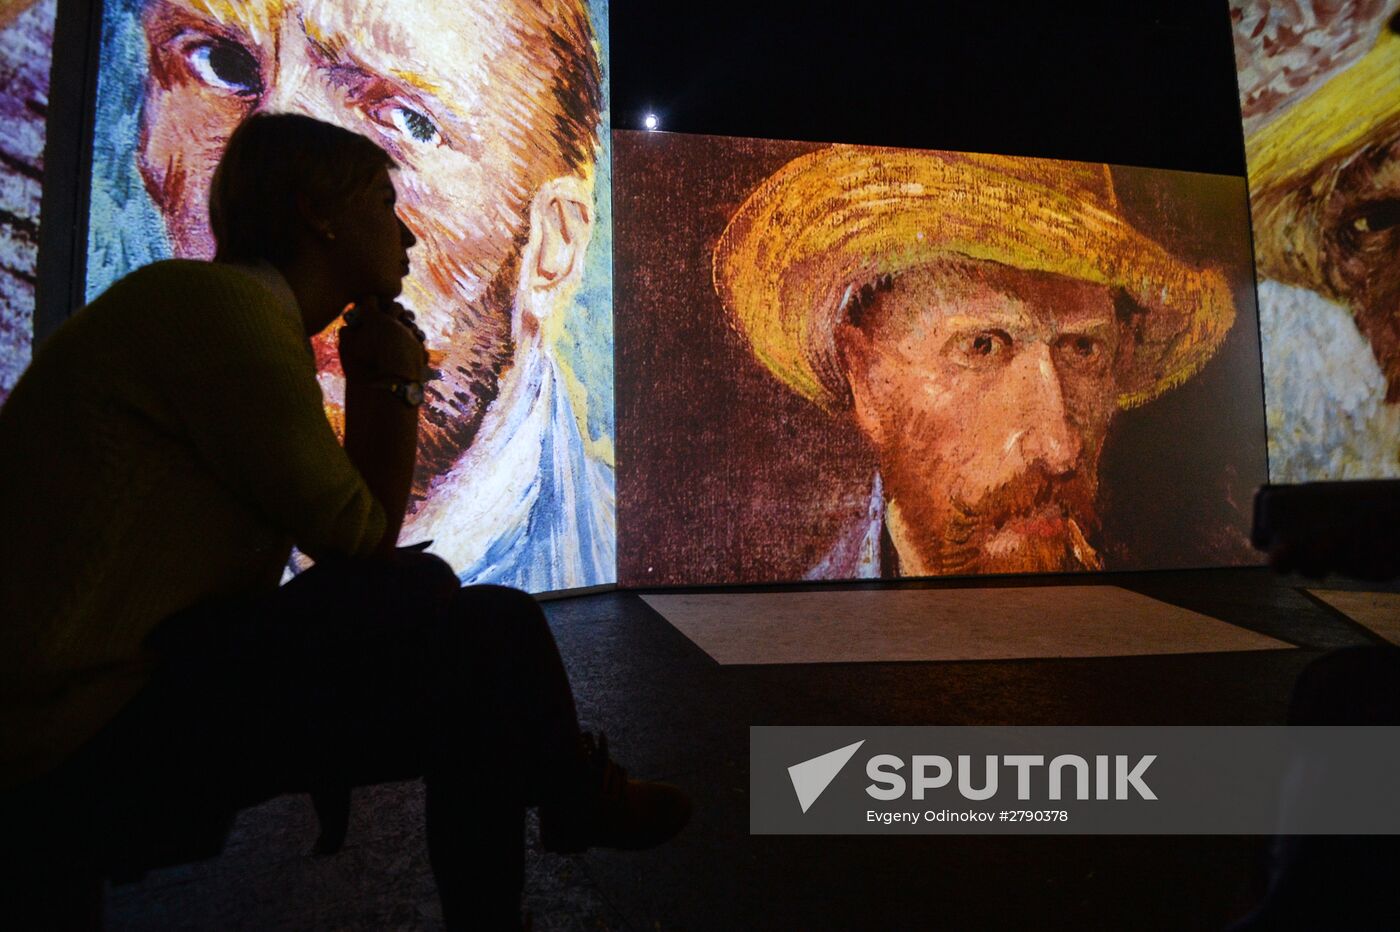 Van Gogh Alive 2.0 exhibition